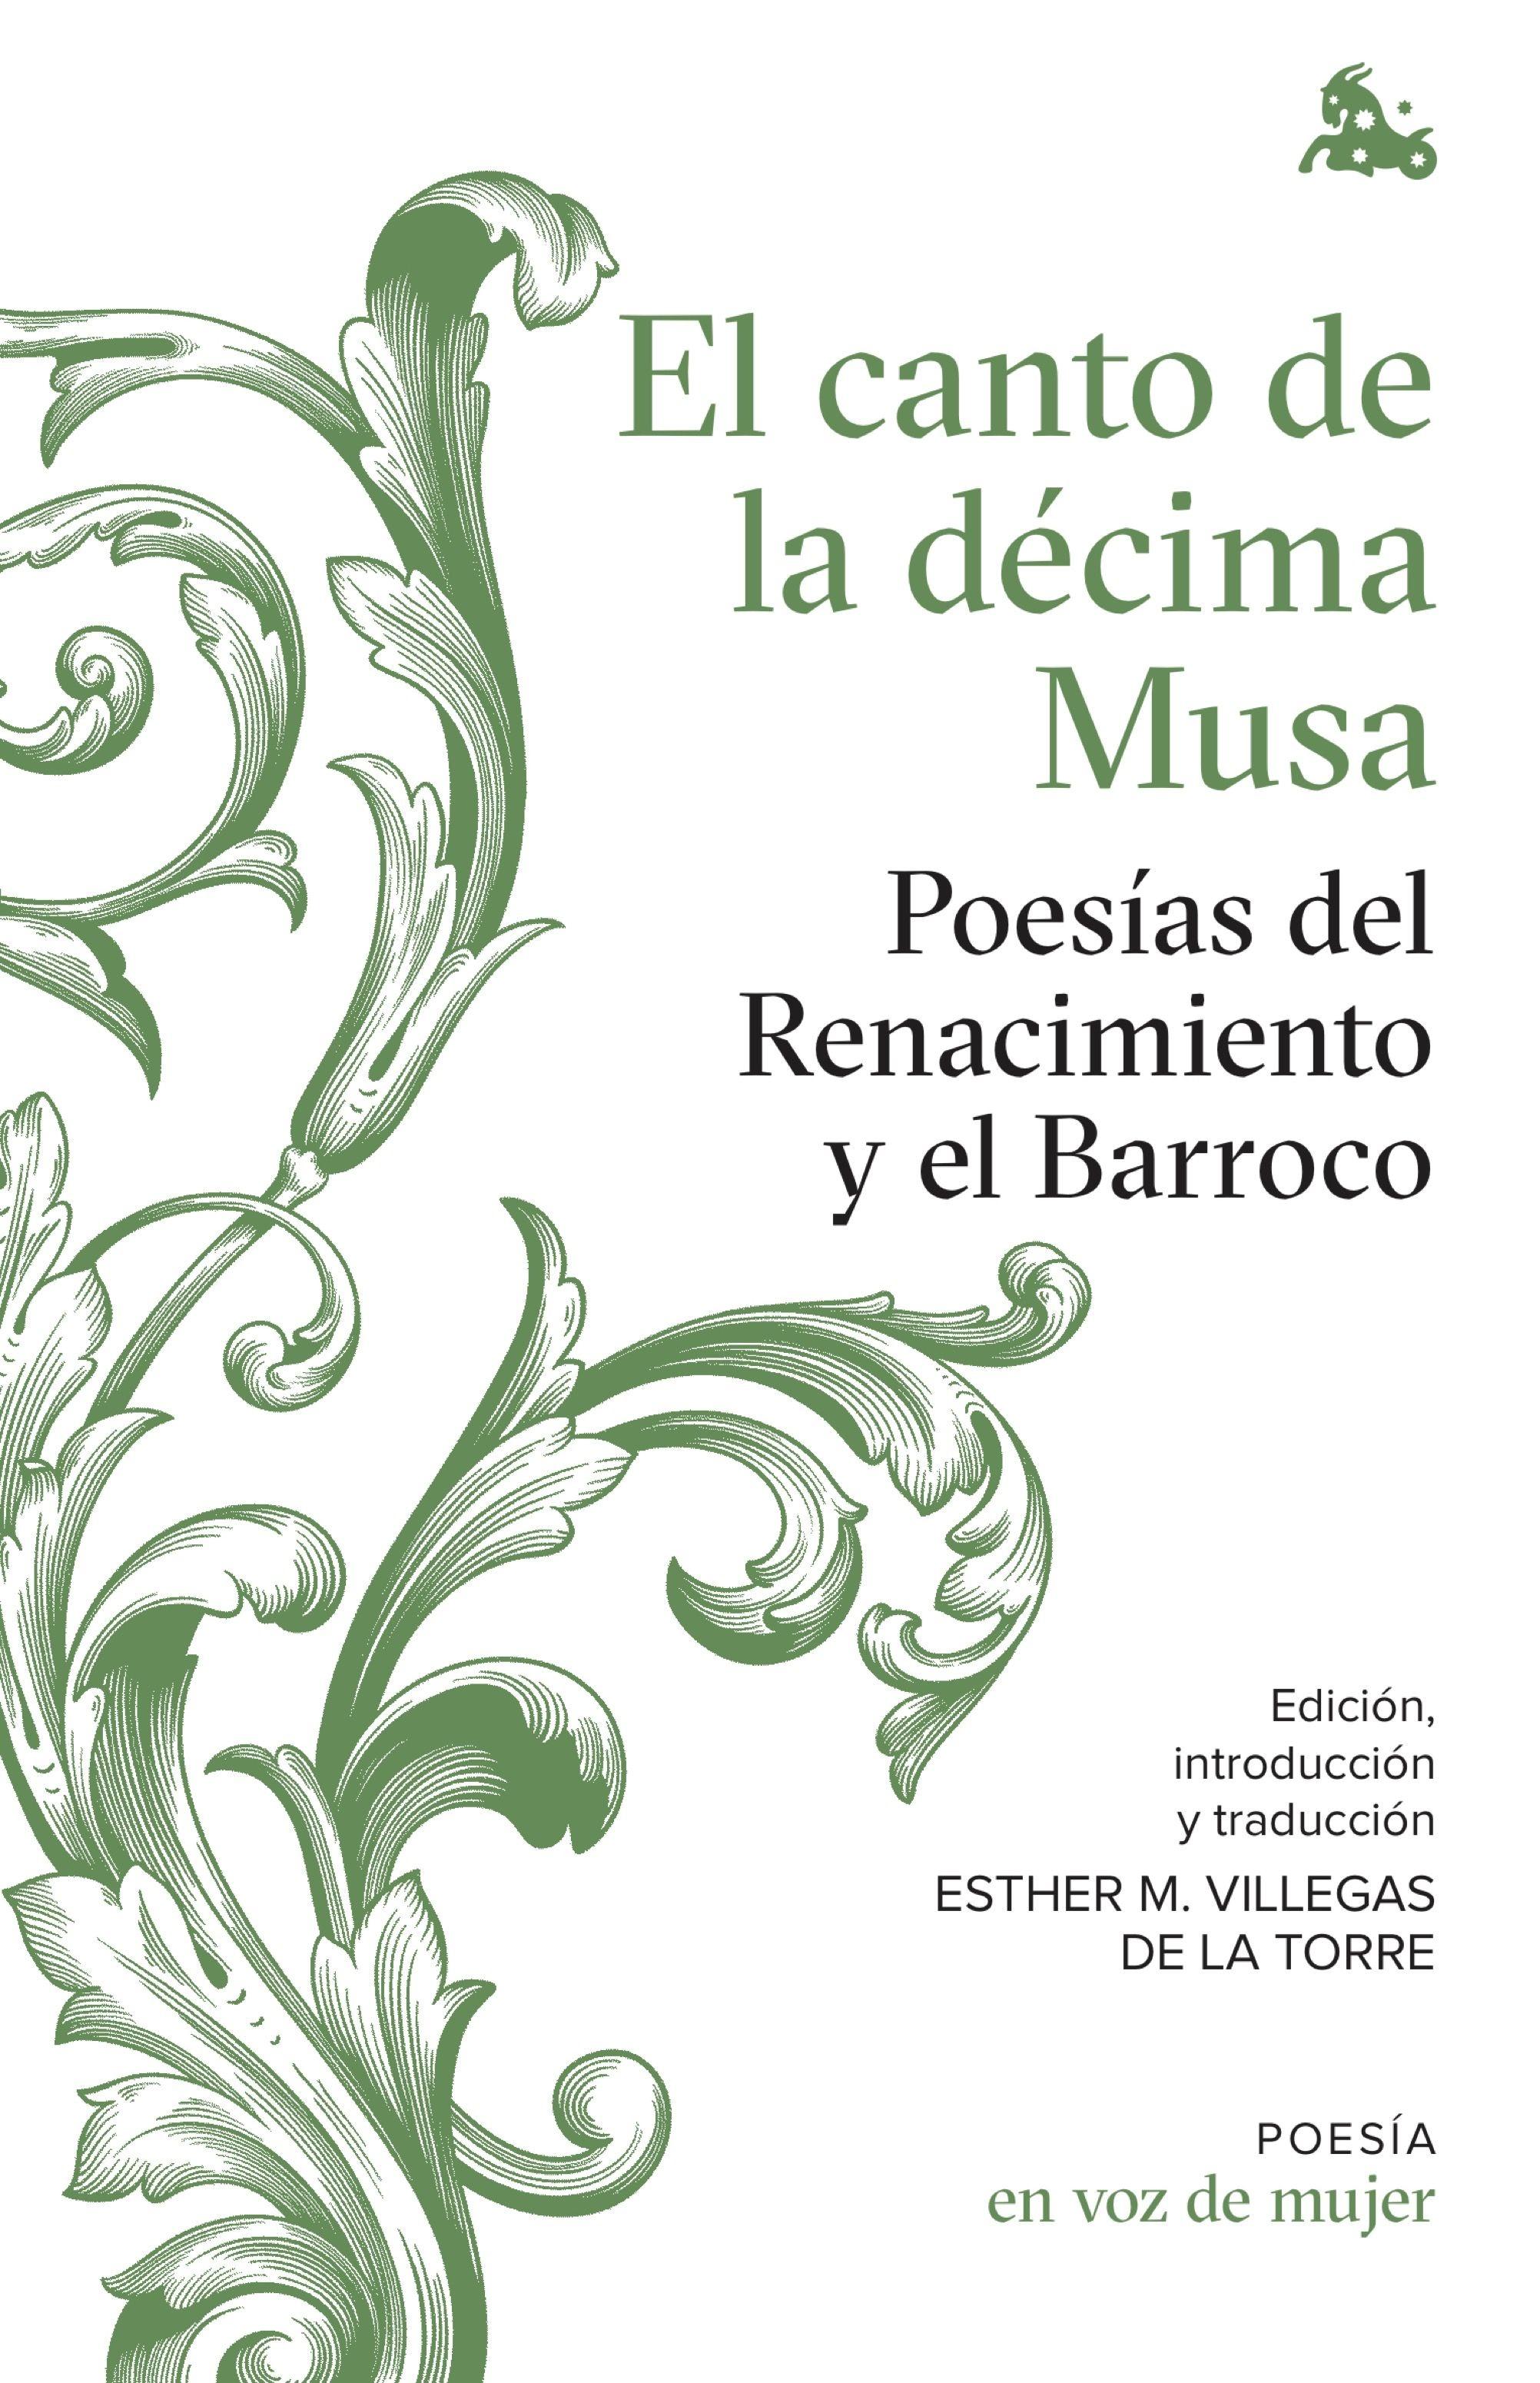 El canto de la décima Musa. Poesías del Renacimiento y el Barroco "Edición, introducción y traducción a cargo de Esther Villegas"